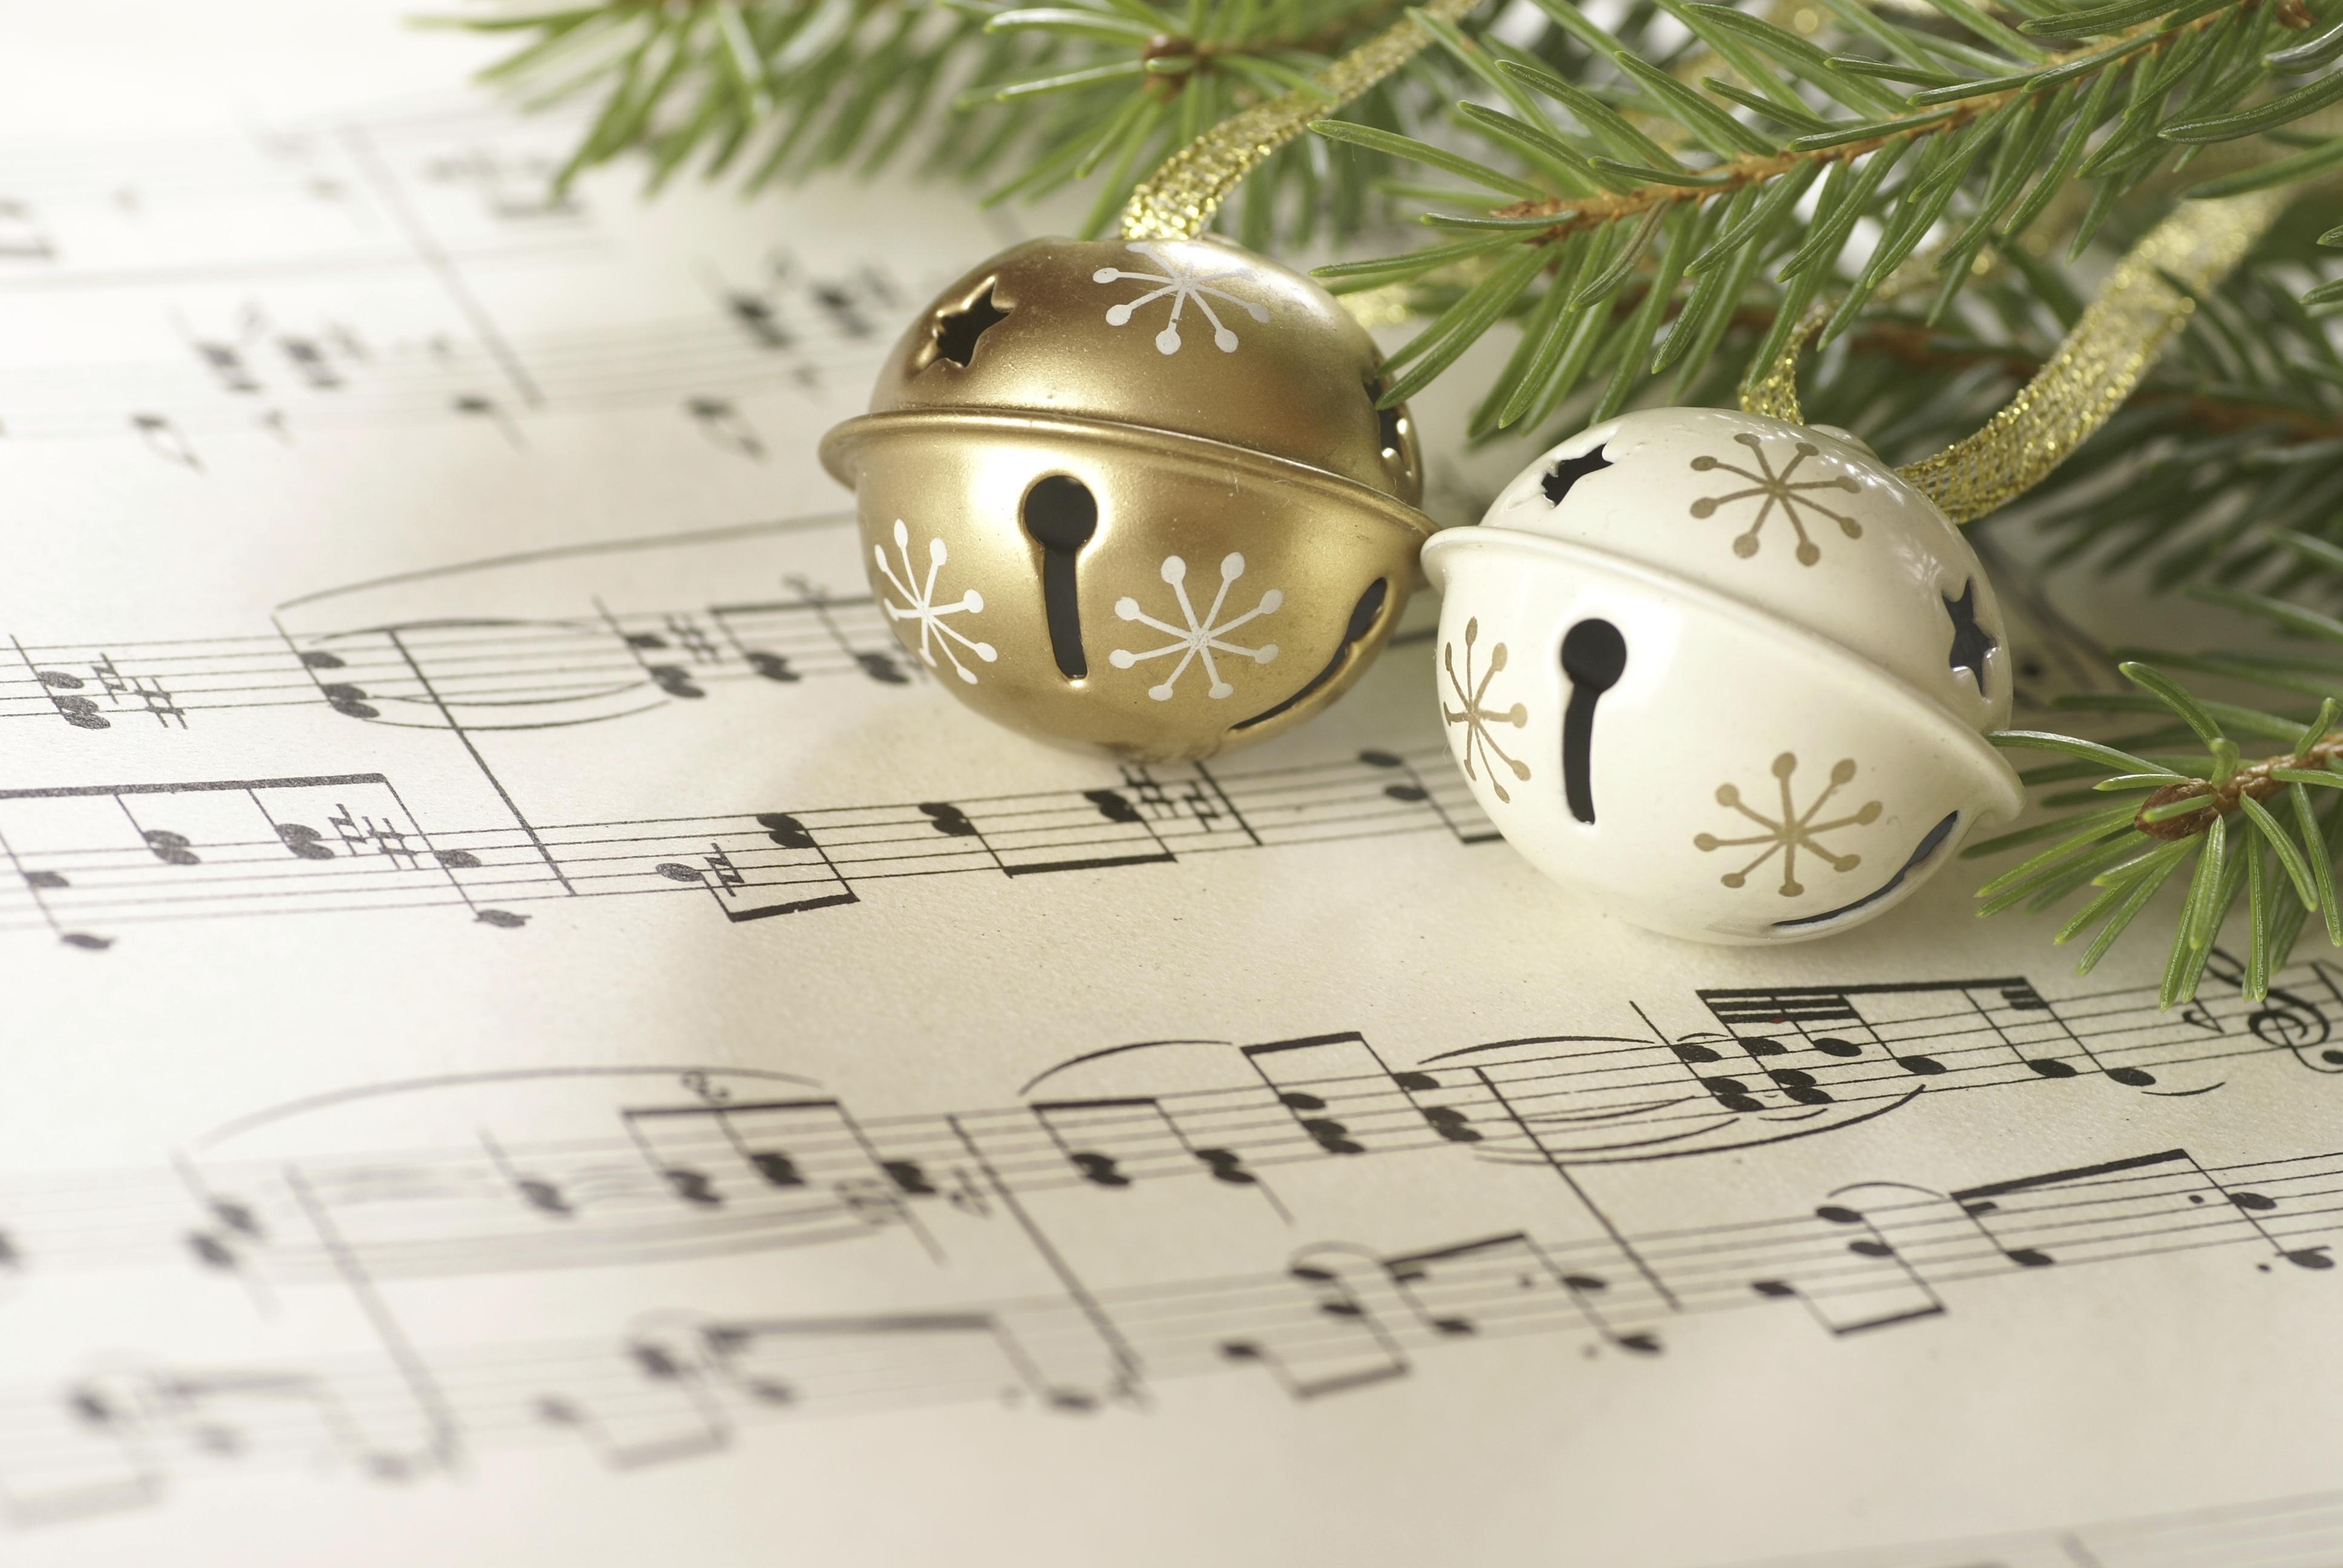 Hình nền Âm nhạc Giáng sinh - Ảnh nền chỉ là một phần nhỏ trong kho trữ hình ảnh Giáng sinh của bạn. Nhưng đây là một phần không thể thiếu, hãy lựa chọn những hình nền âm nhạc giáng sinh đẹp nhất và tạo nên không khí lễ hội ấm áp trong không gian làm việc của bạn.